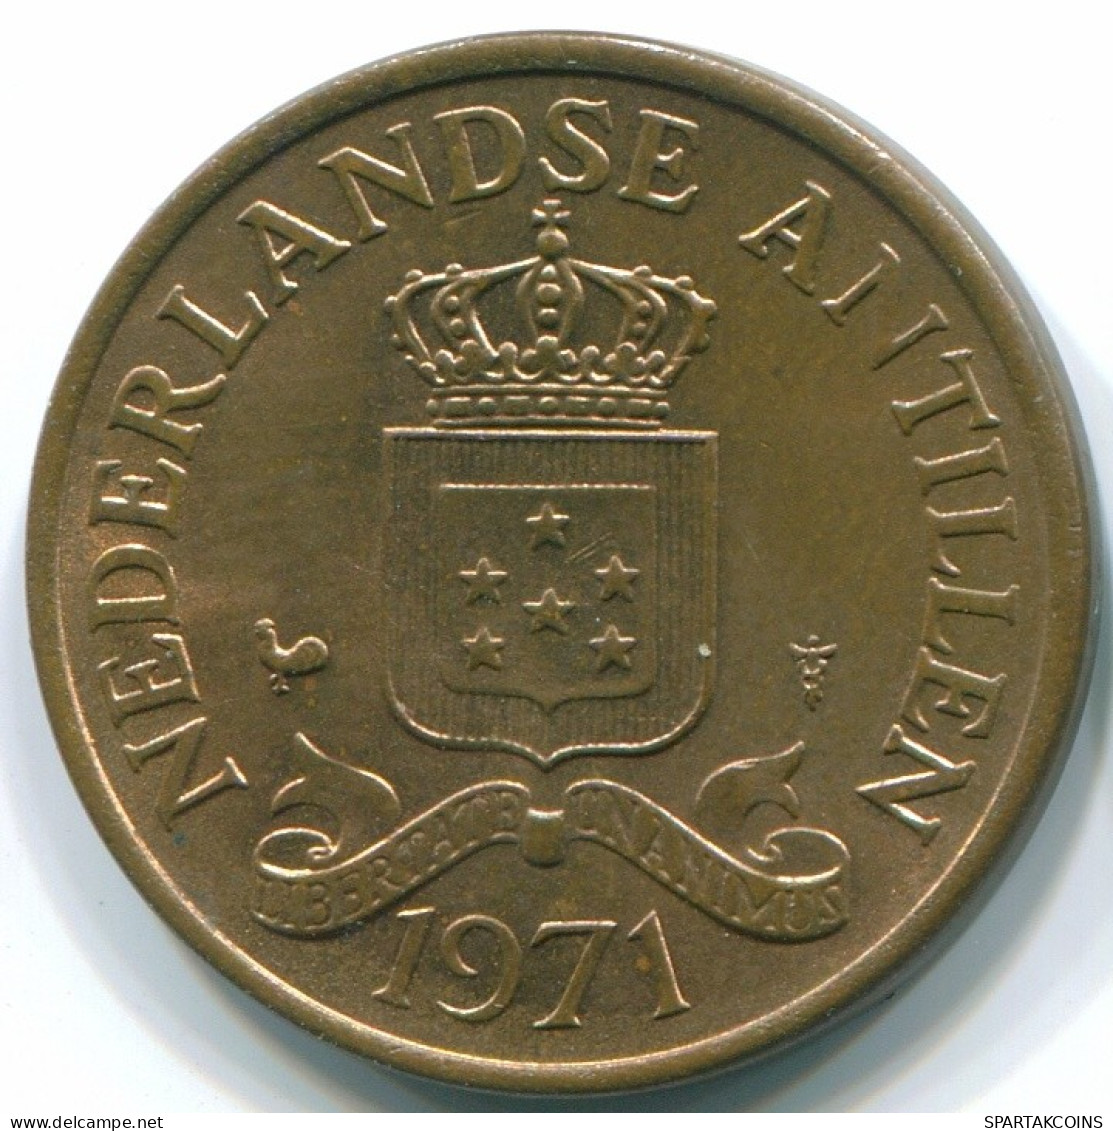 2 1/2 CENT 1971 NIEDERLÄNDISCHE ANTILLEN Bronze Koloniale Münze #S10505.D.A - Niederländische Antillen